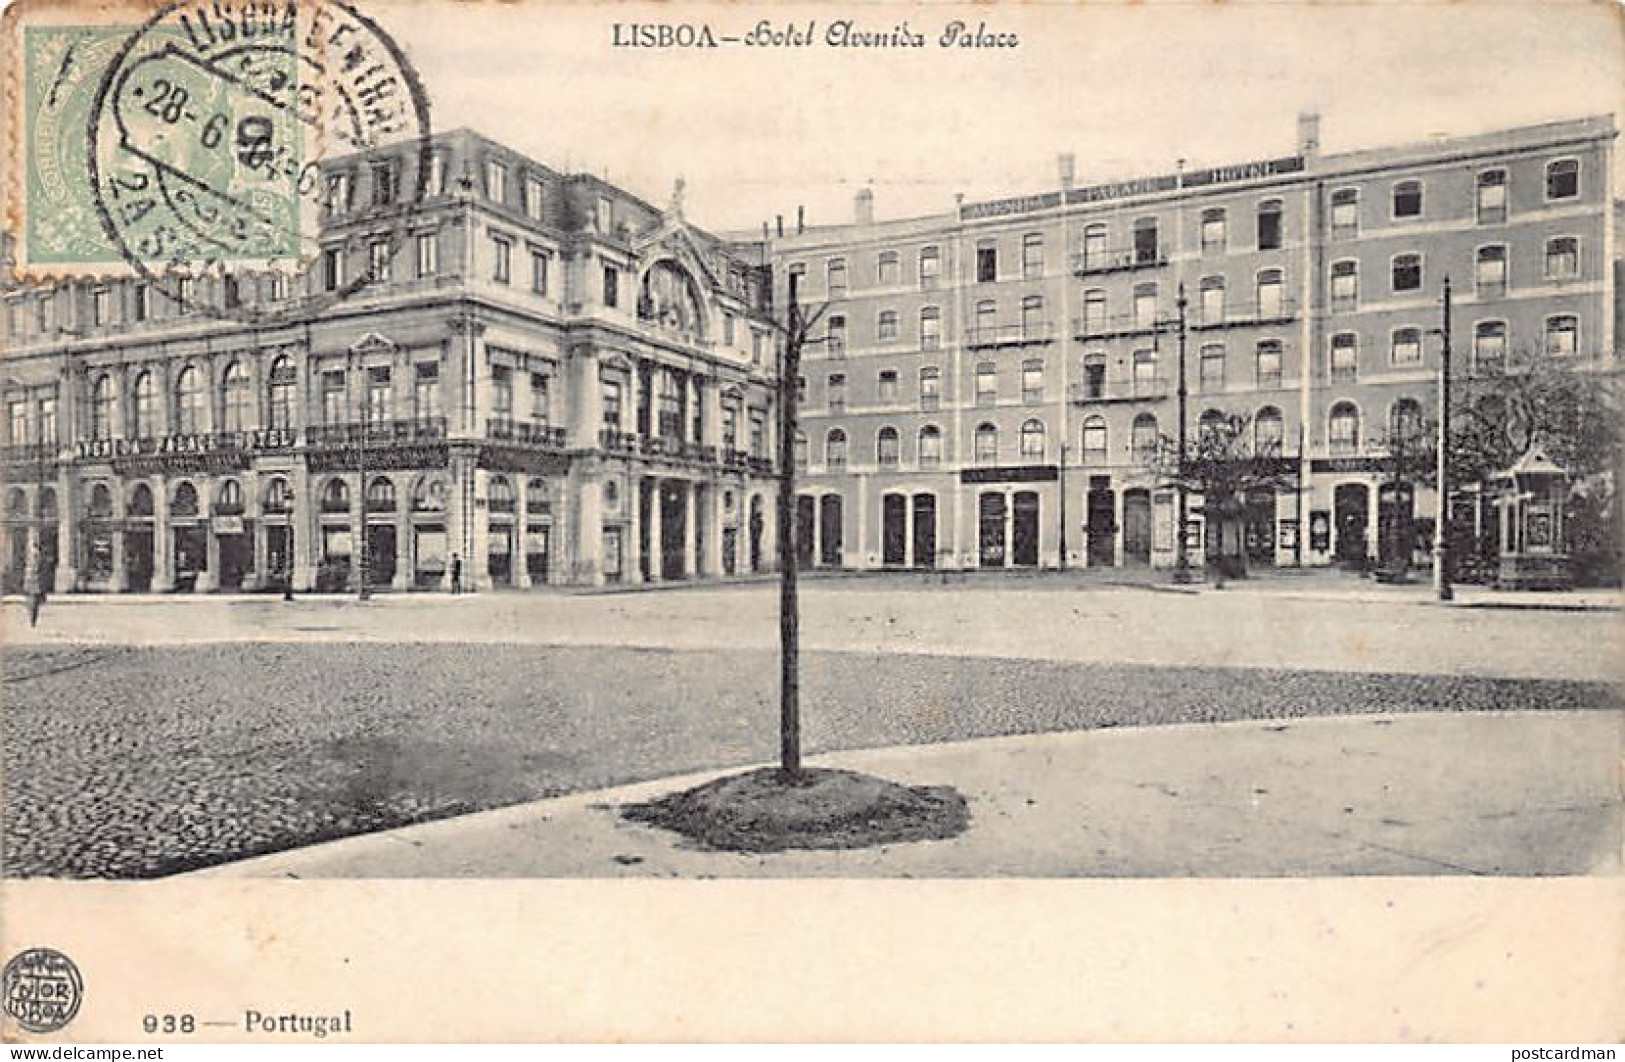 Portugal - LISBOA - Hotel Avenida Palace - Ed. F. A. Martins 938 - Lisboa